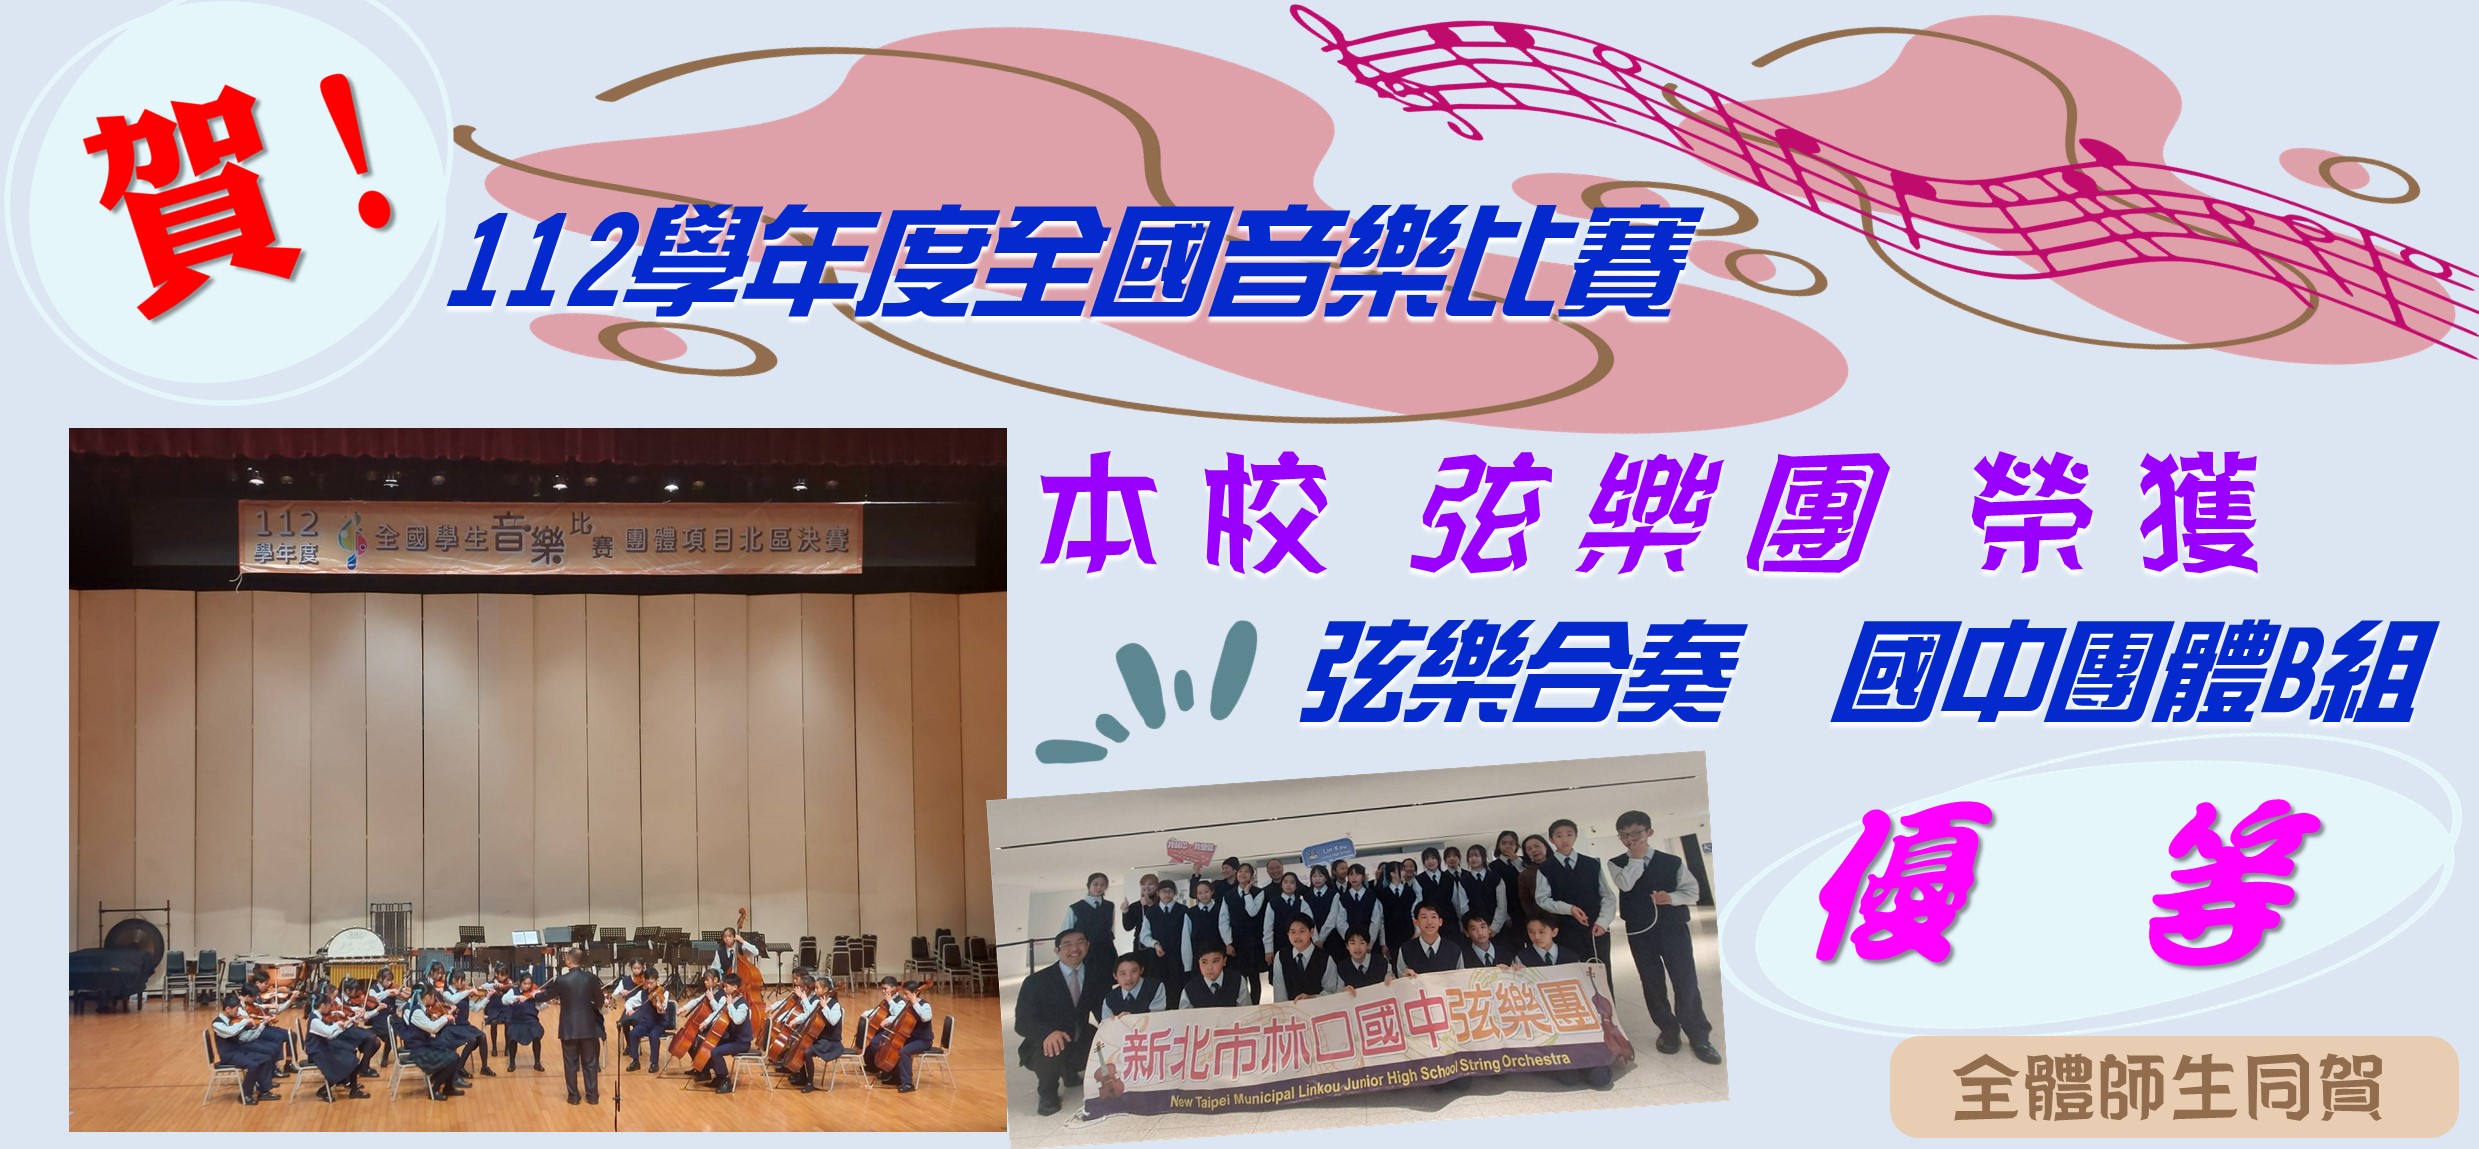 112年全國學生音樂比賽-弦樂團榮獲優等